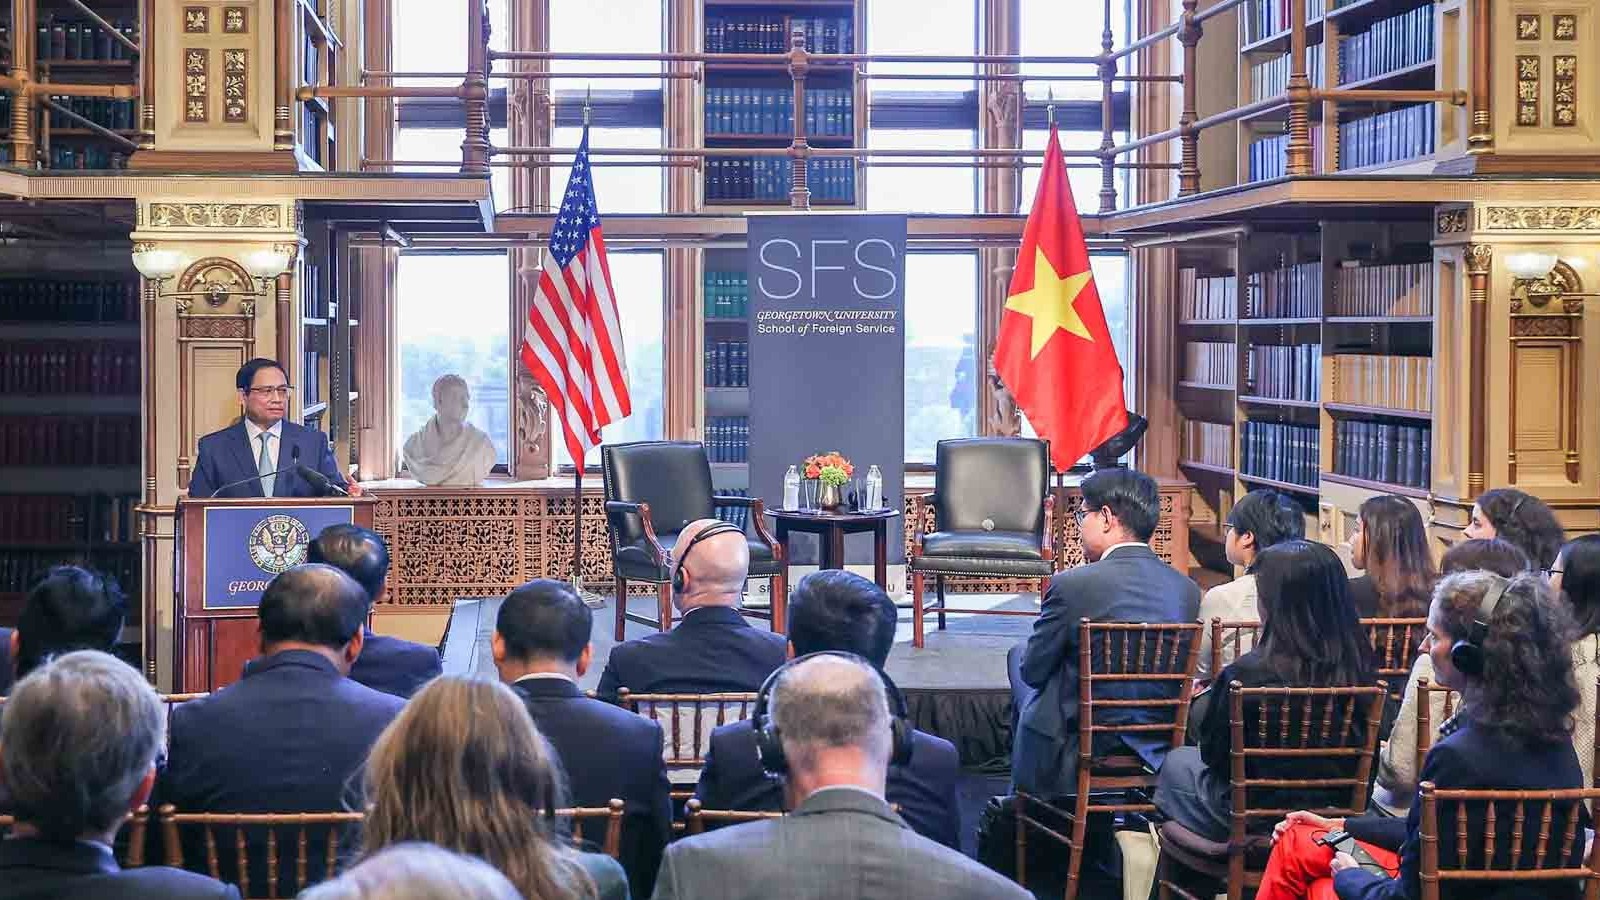 Ba vấn đề trong bài phát biểu chính sách của Thủ tướng Phạm Minh Chính tại Đại học Georgetown, Hoa Kỳ